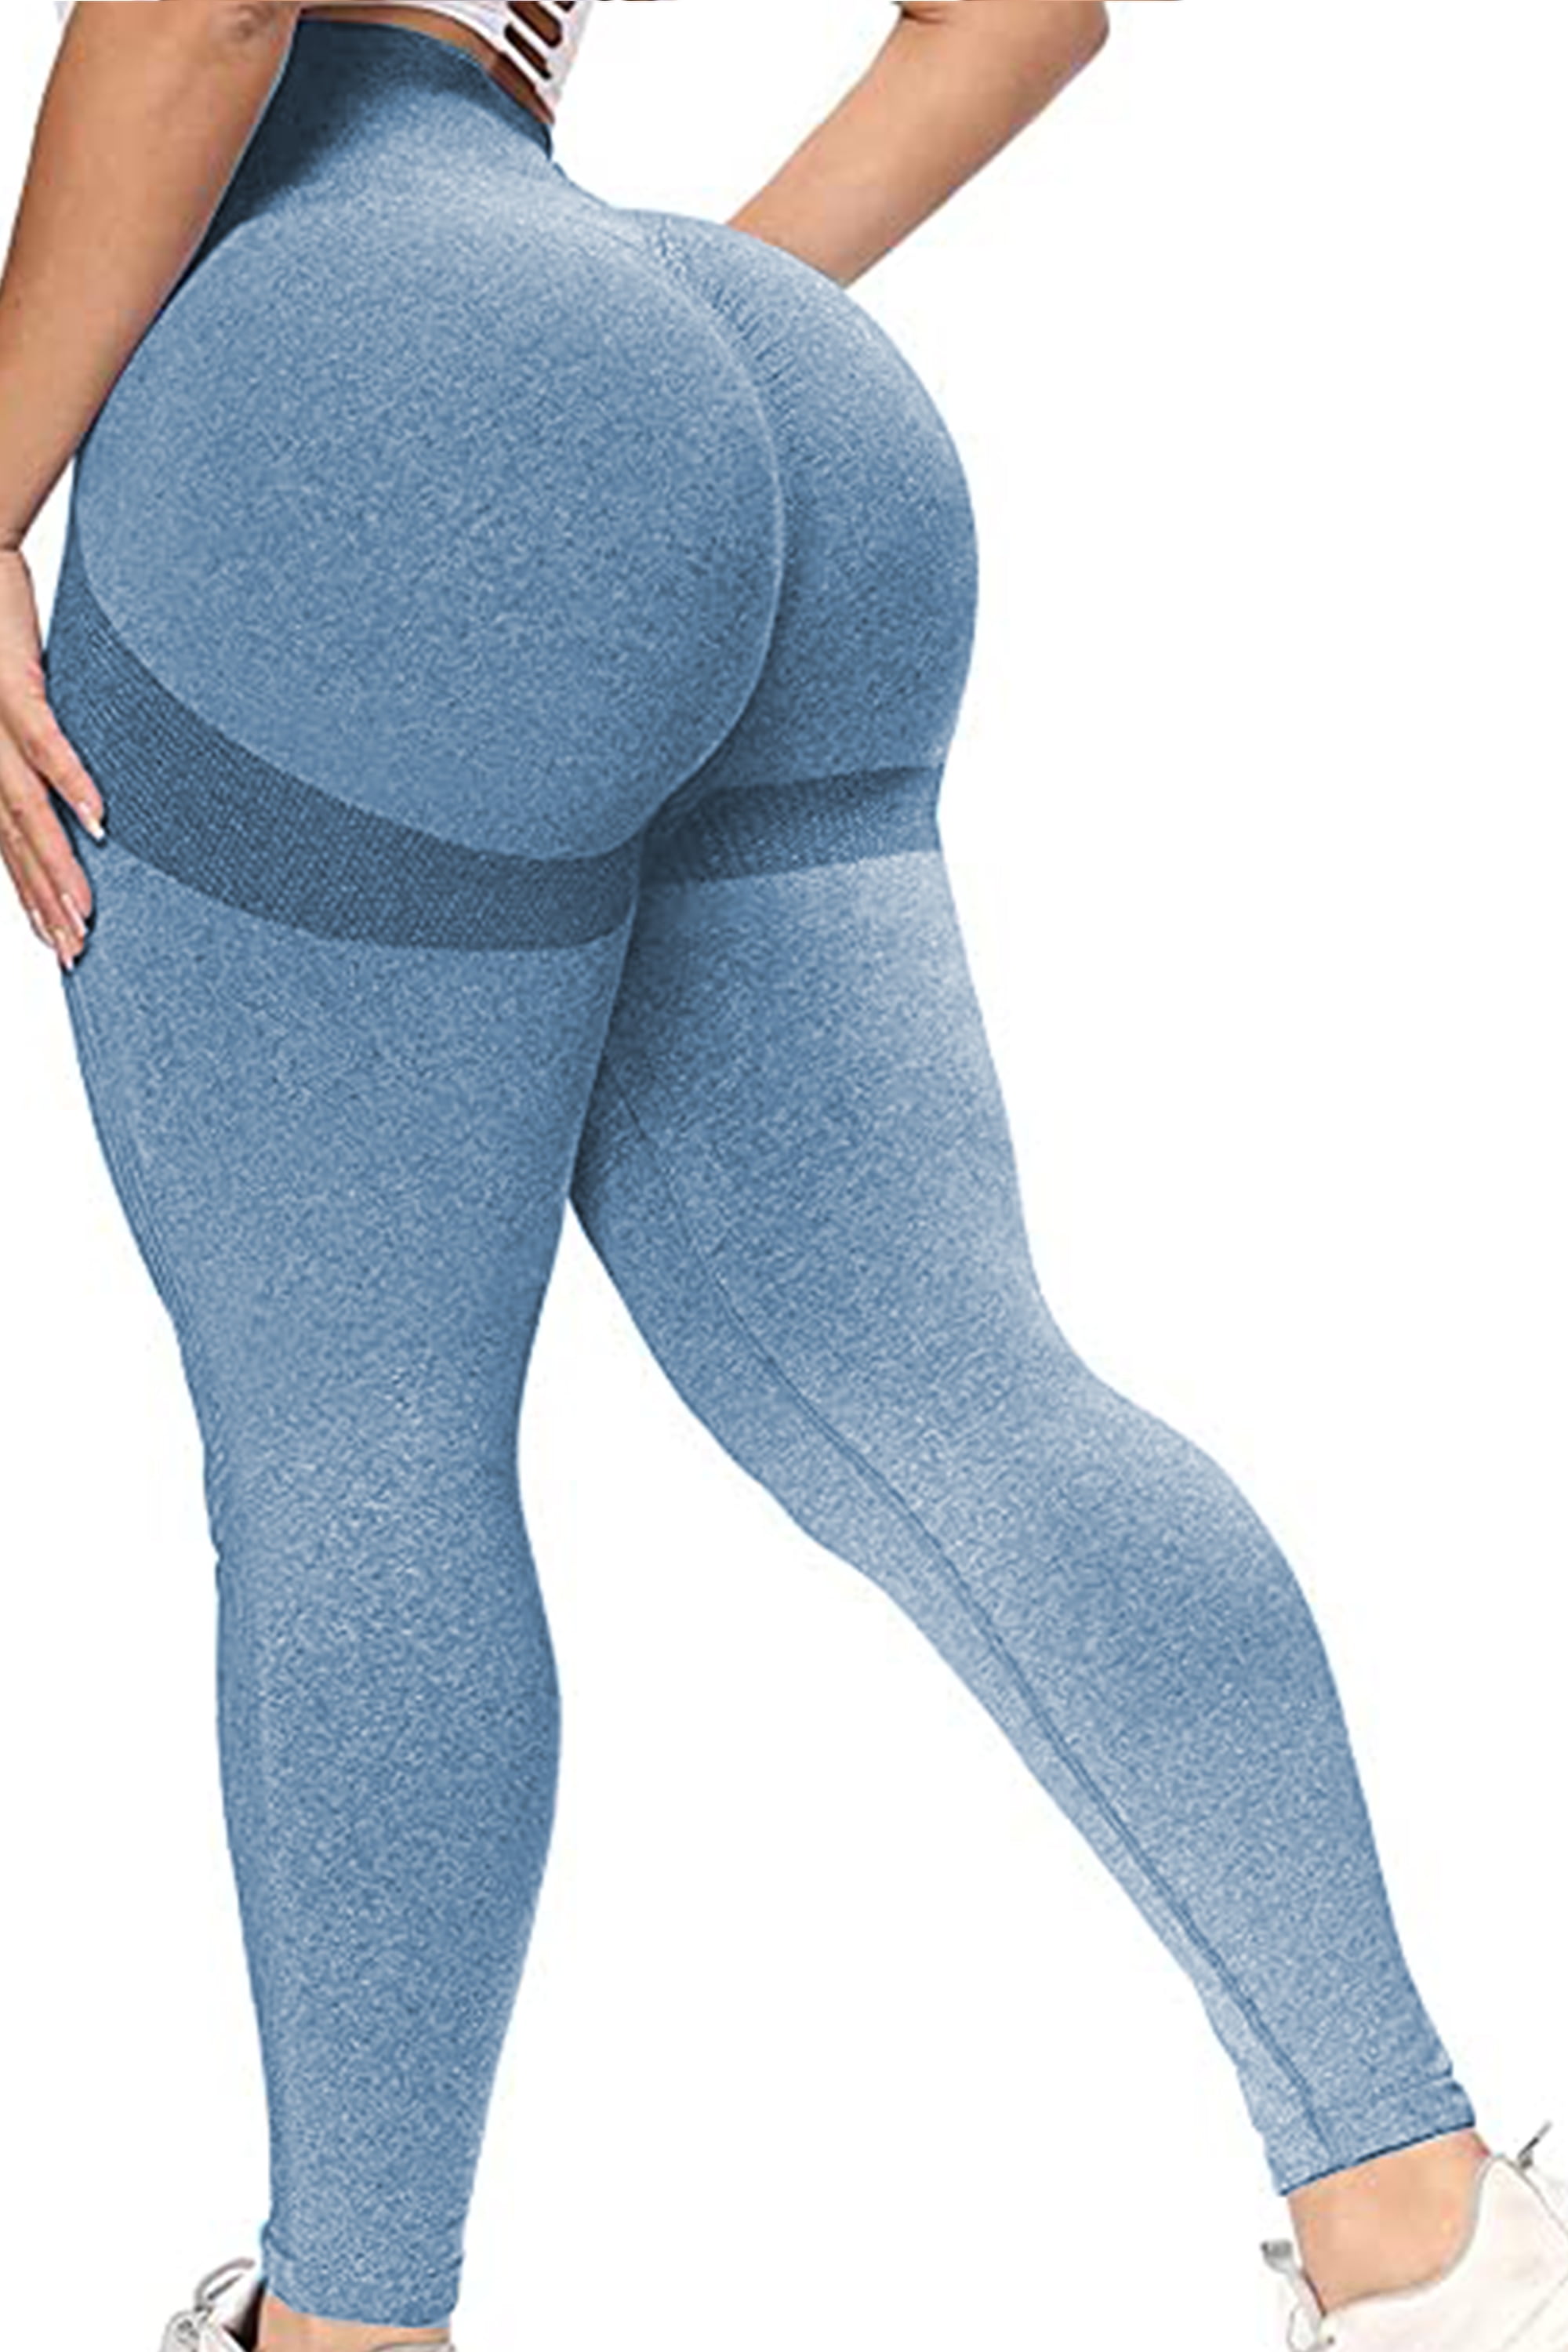 FITTOO Women's High Waist Scrunch Butt Lift Seamless Leggings